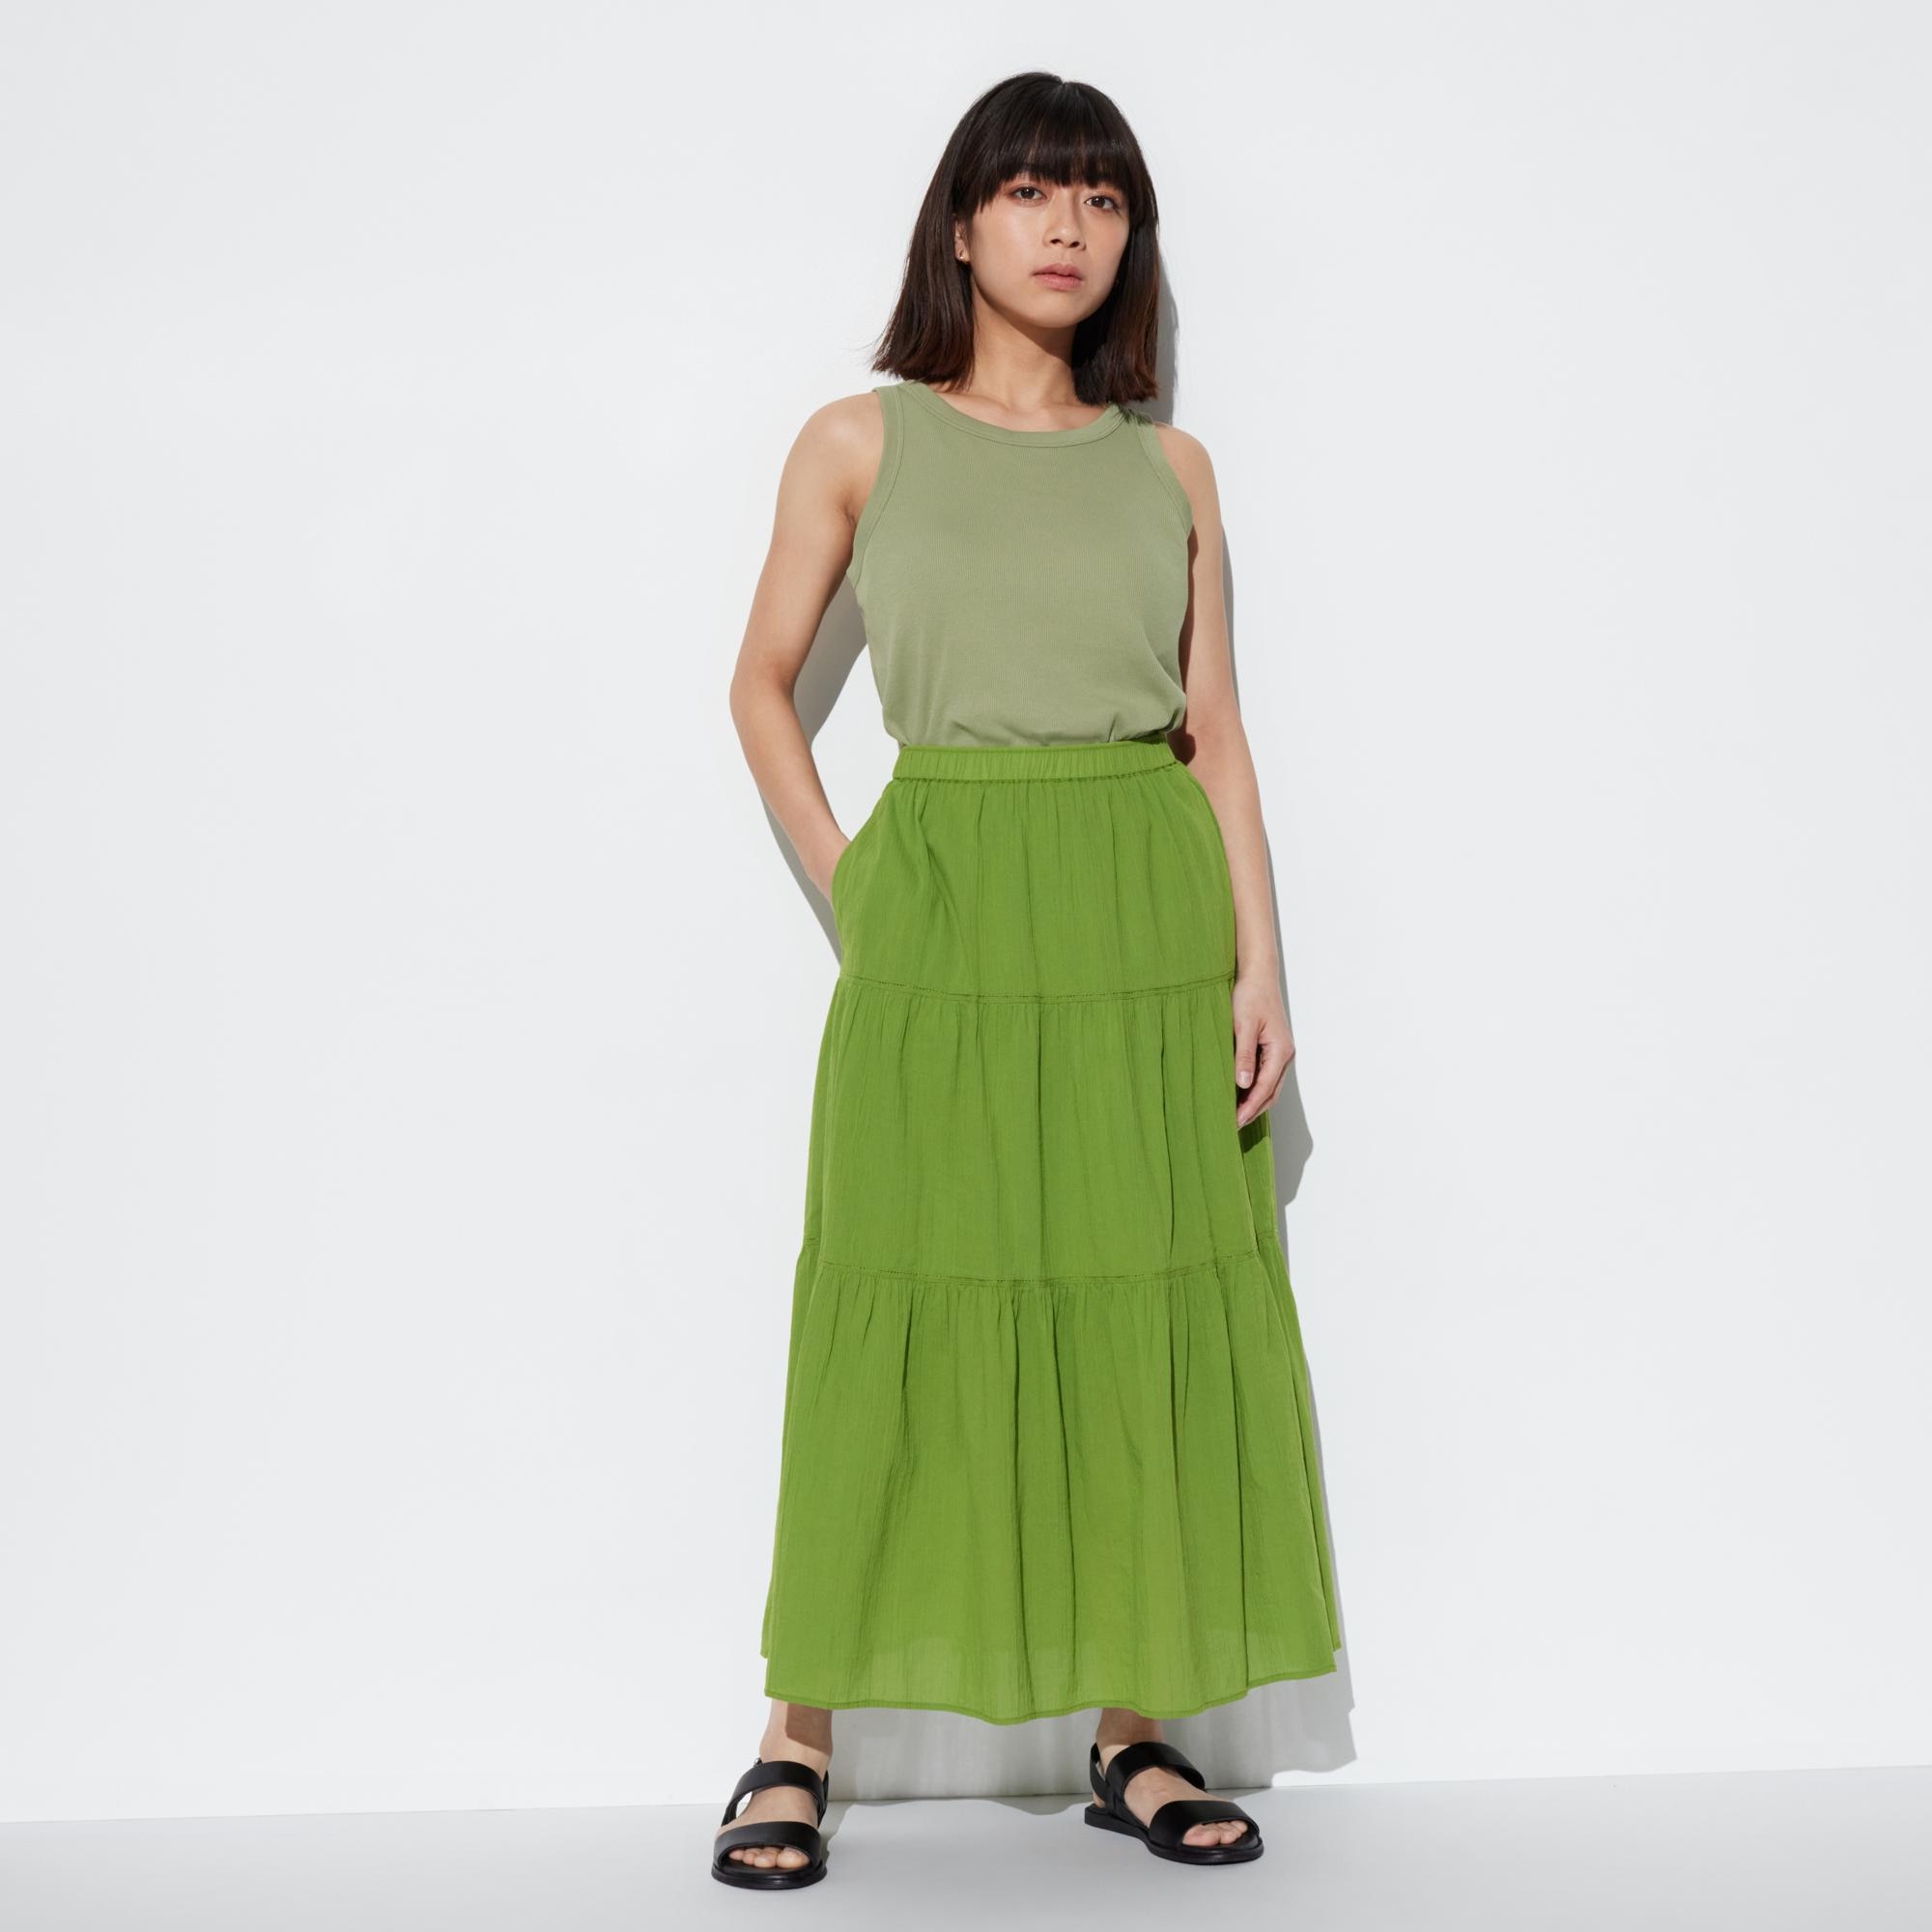 緑 スカート 無地の関連商品 | ユニクロ